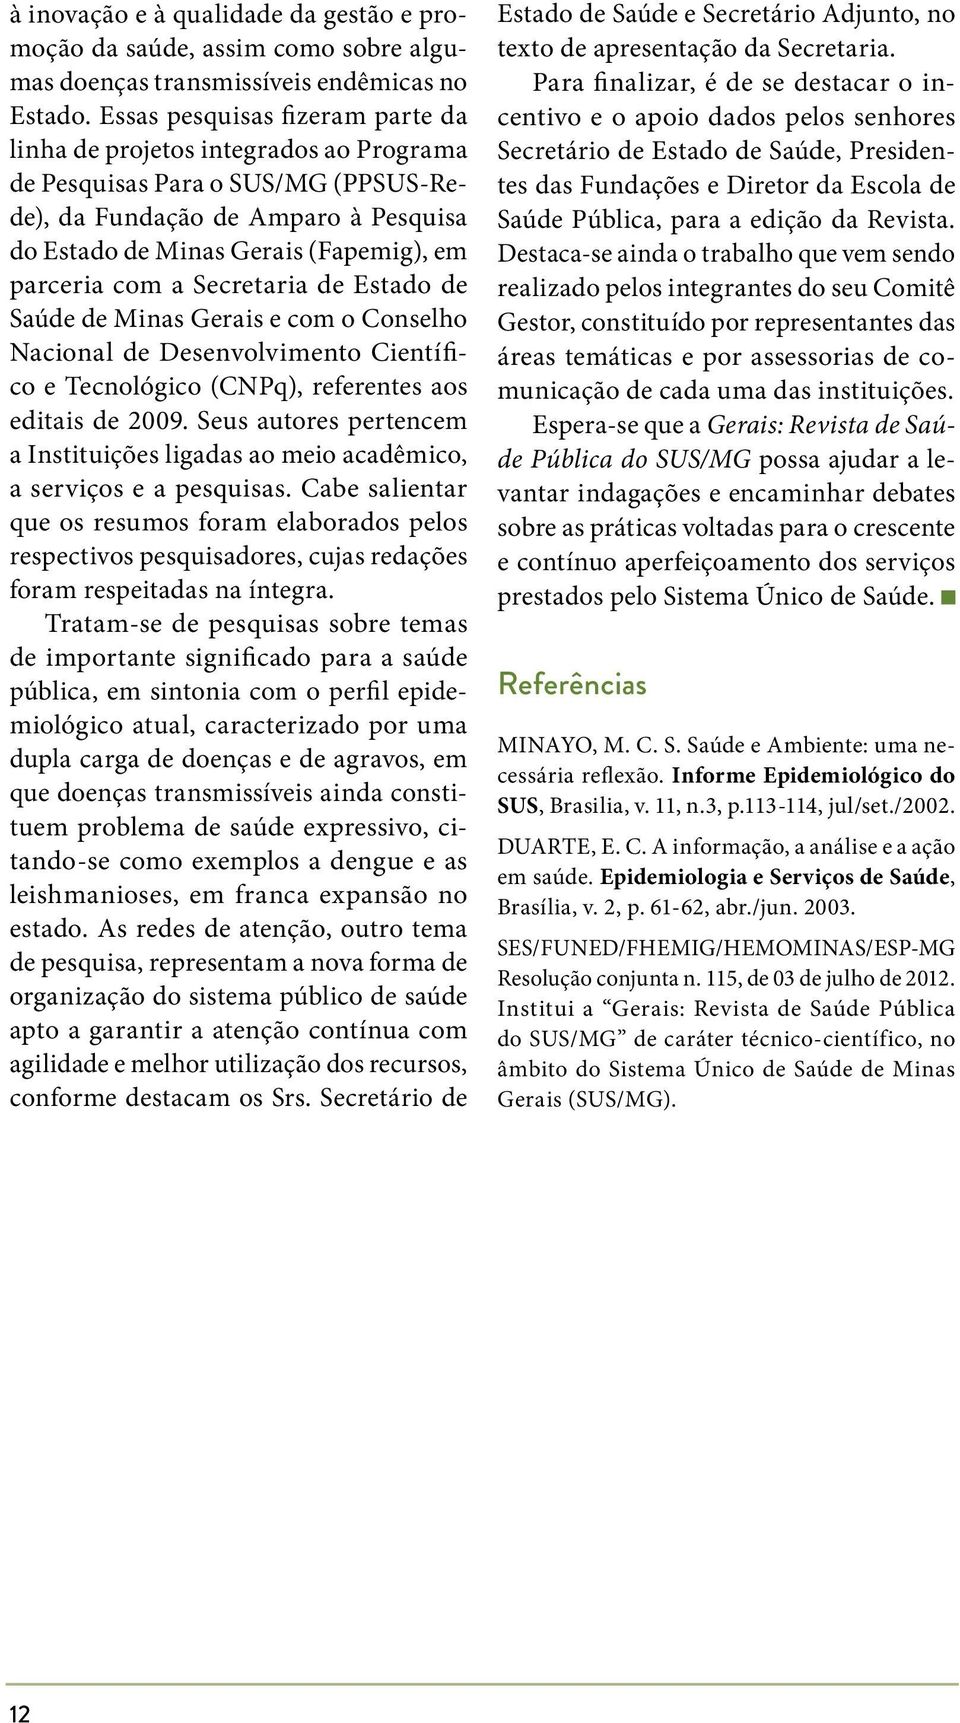 com a Secretaria de Estado de Saúde de Minas Gerais e com o Conselho Nacional de Desenvolvimento Científico e Tecnológico (CNPq), referentes aos editais de 2009.